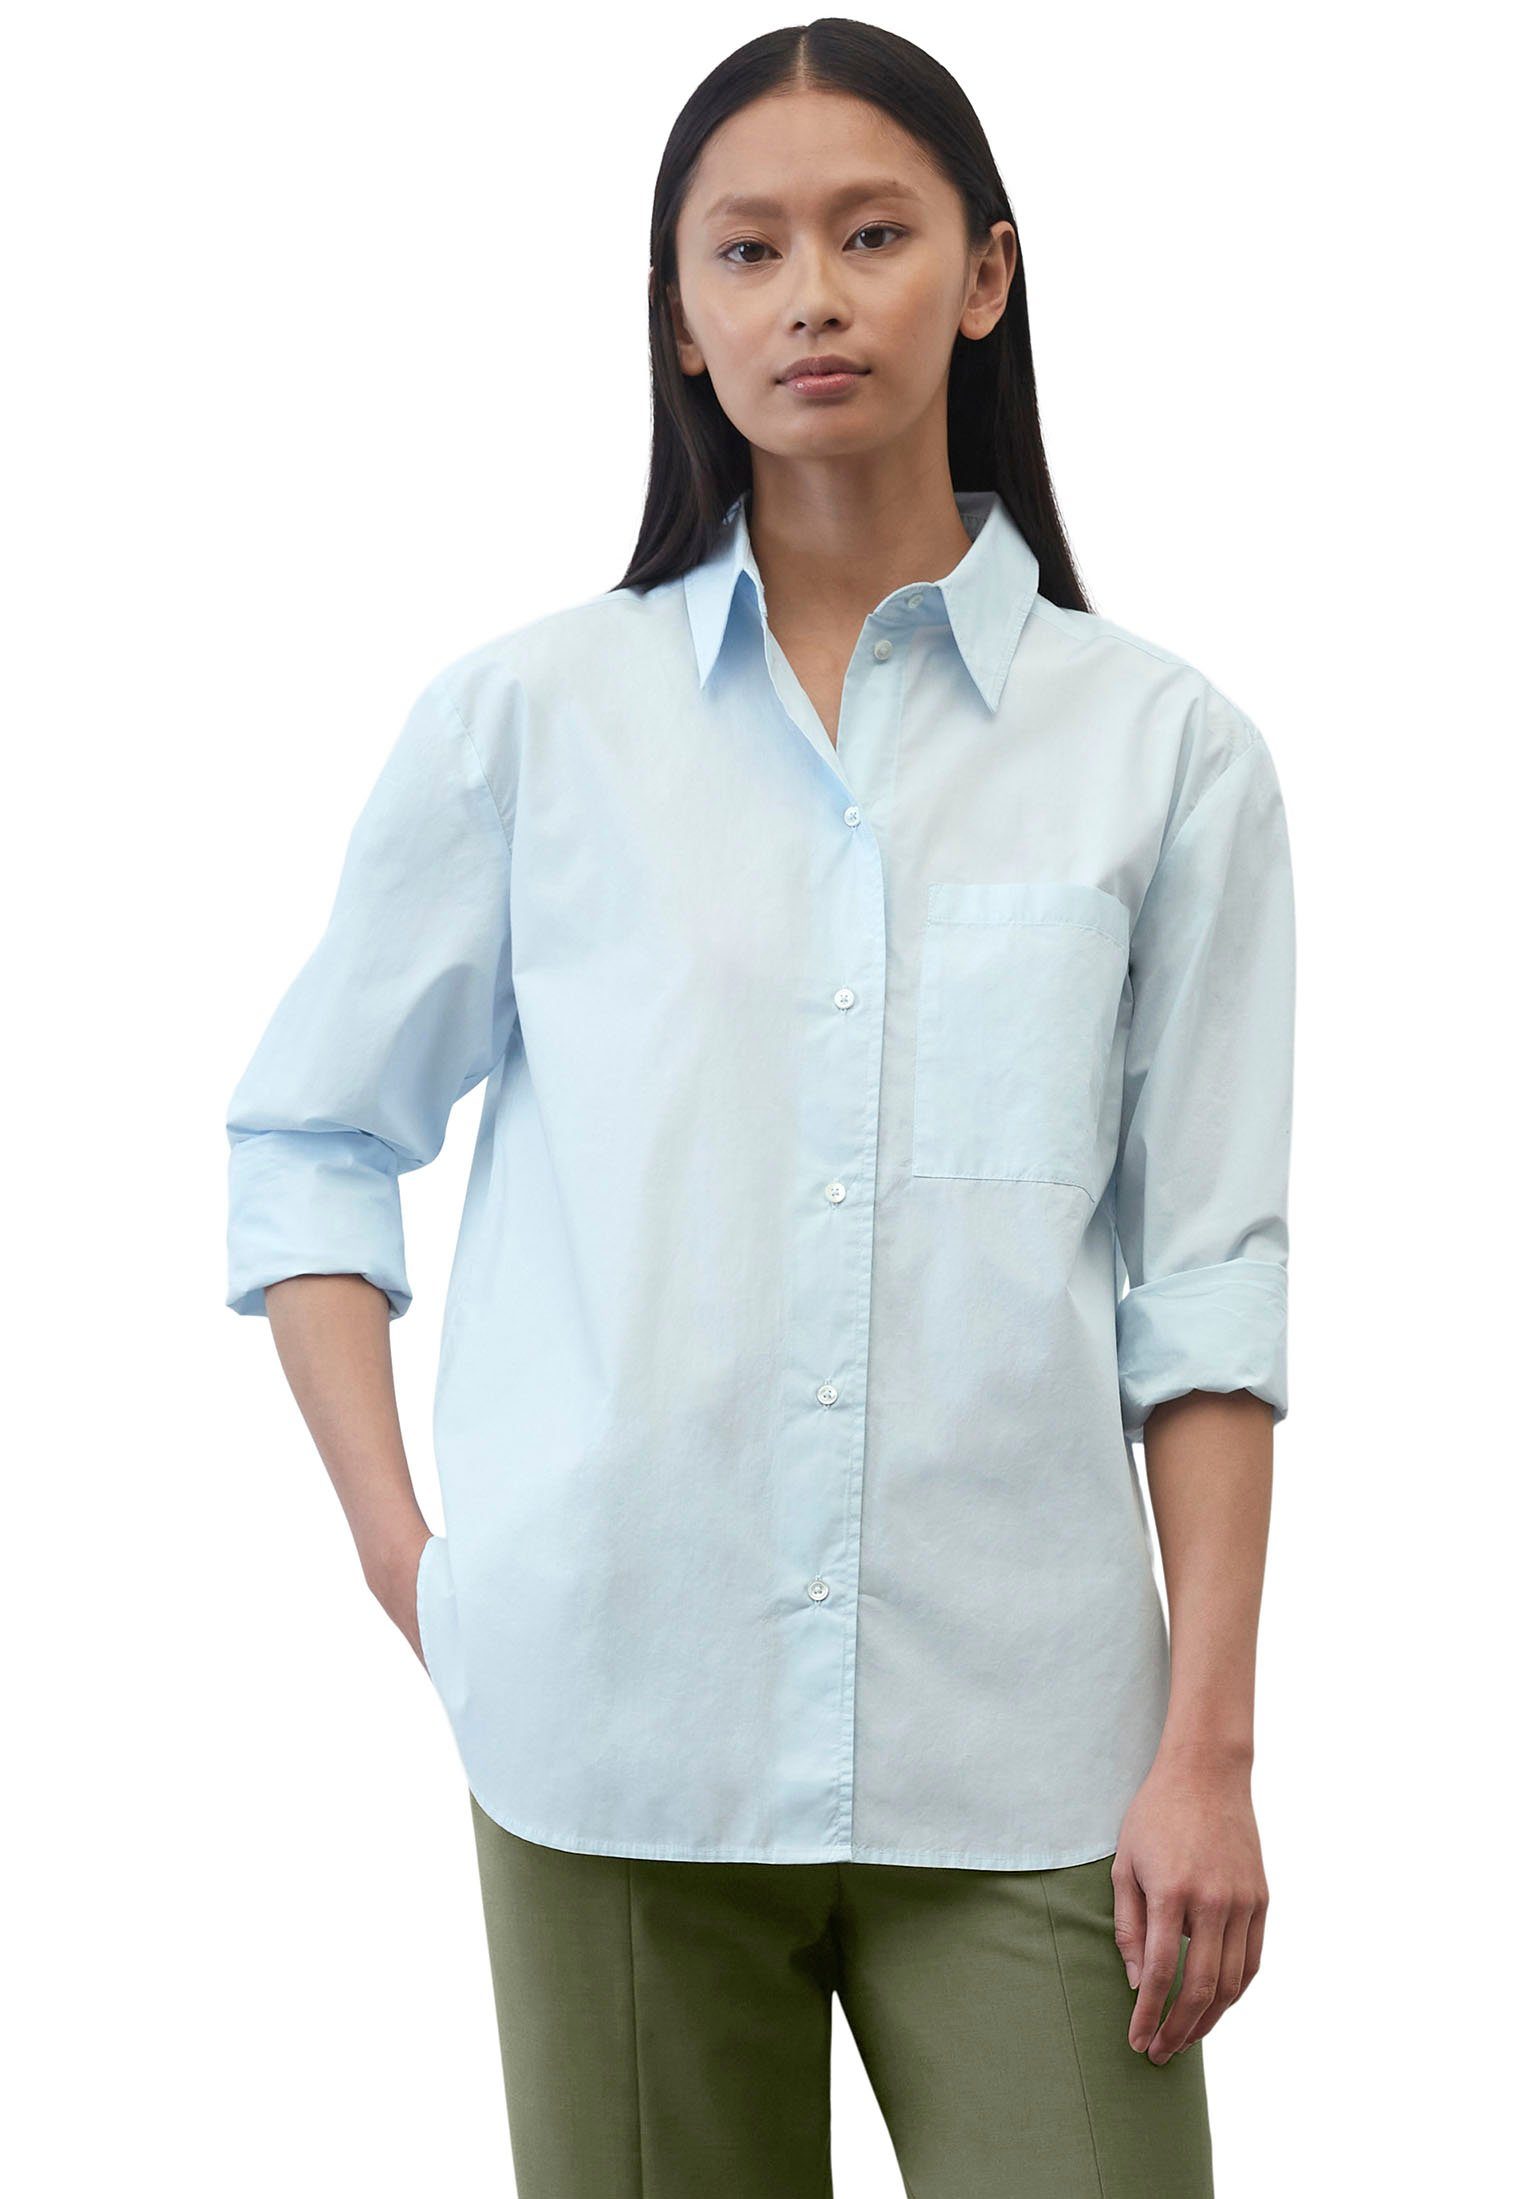 patched Hemdbluse sleeve, O'Polo einer kent Blouse, collar, solid Brusttasche mit pocket, hellblau long aufgesetzten Marc